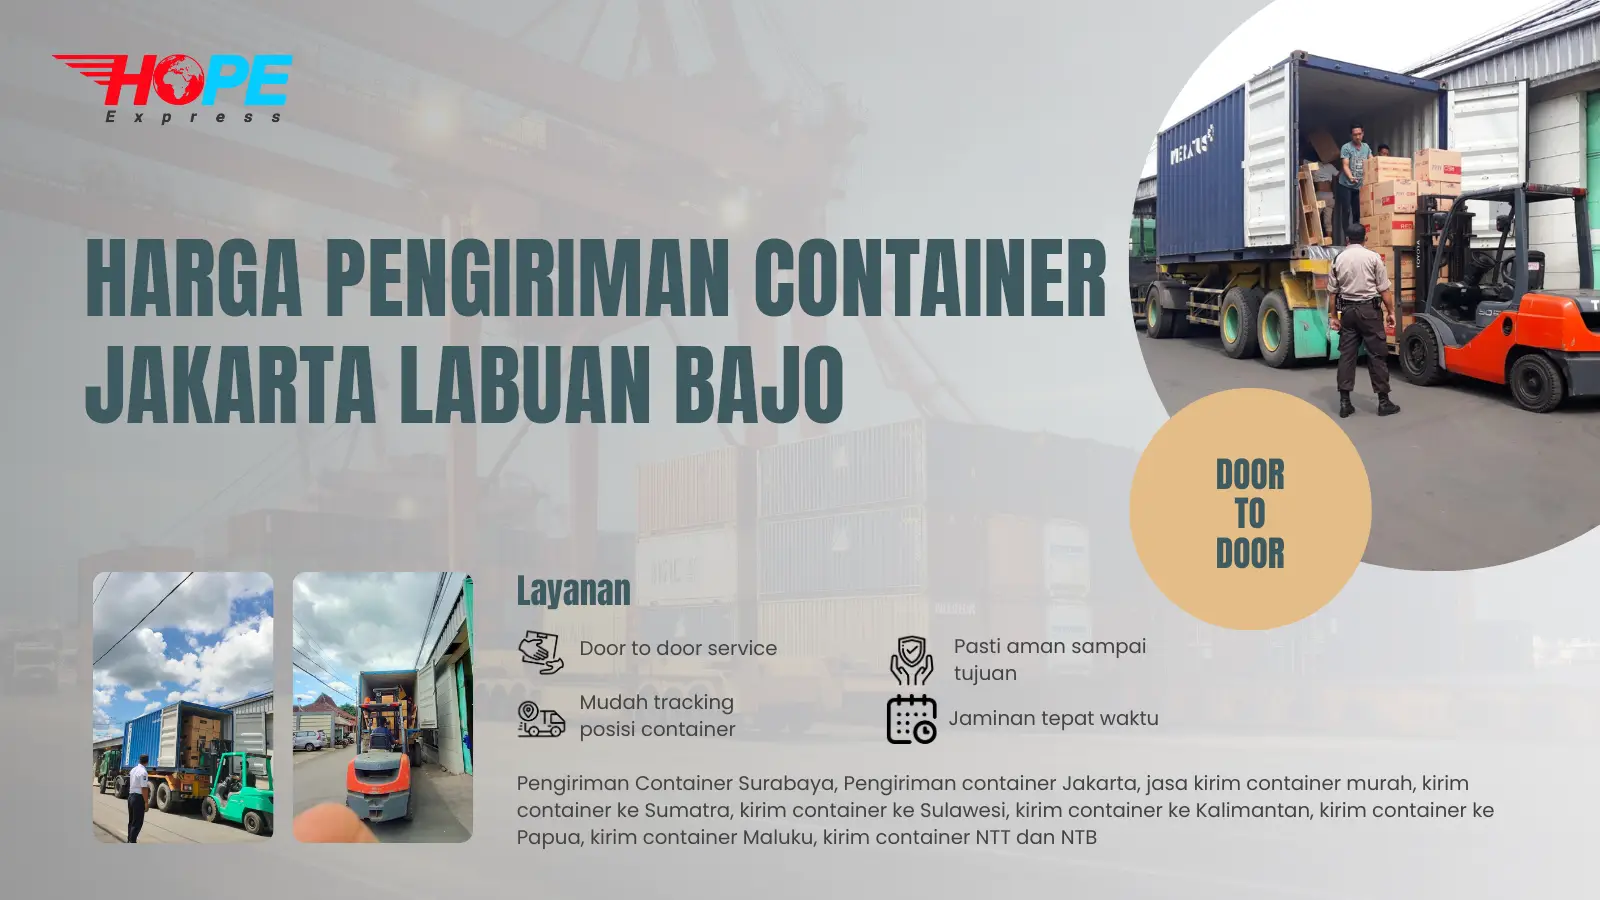 Harga Pengiriman container Jakarta Labuan Bajo